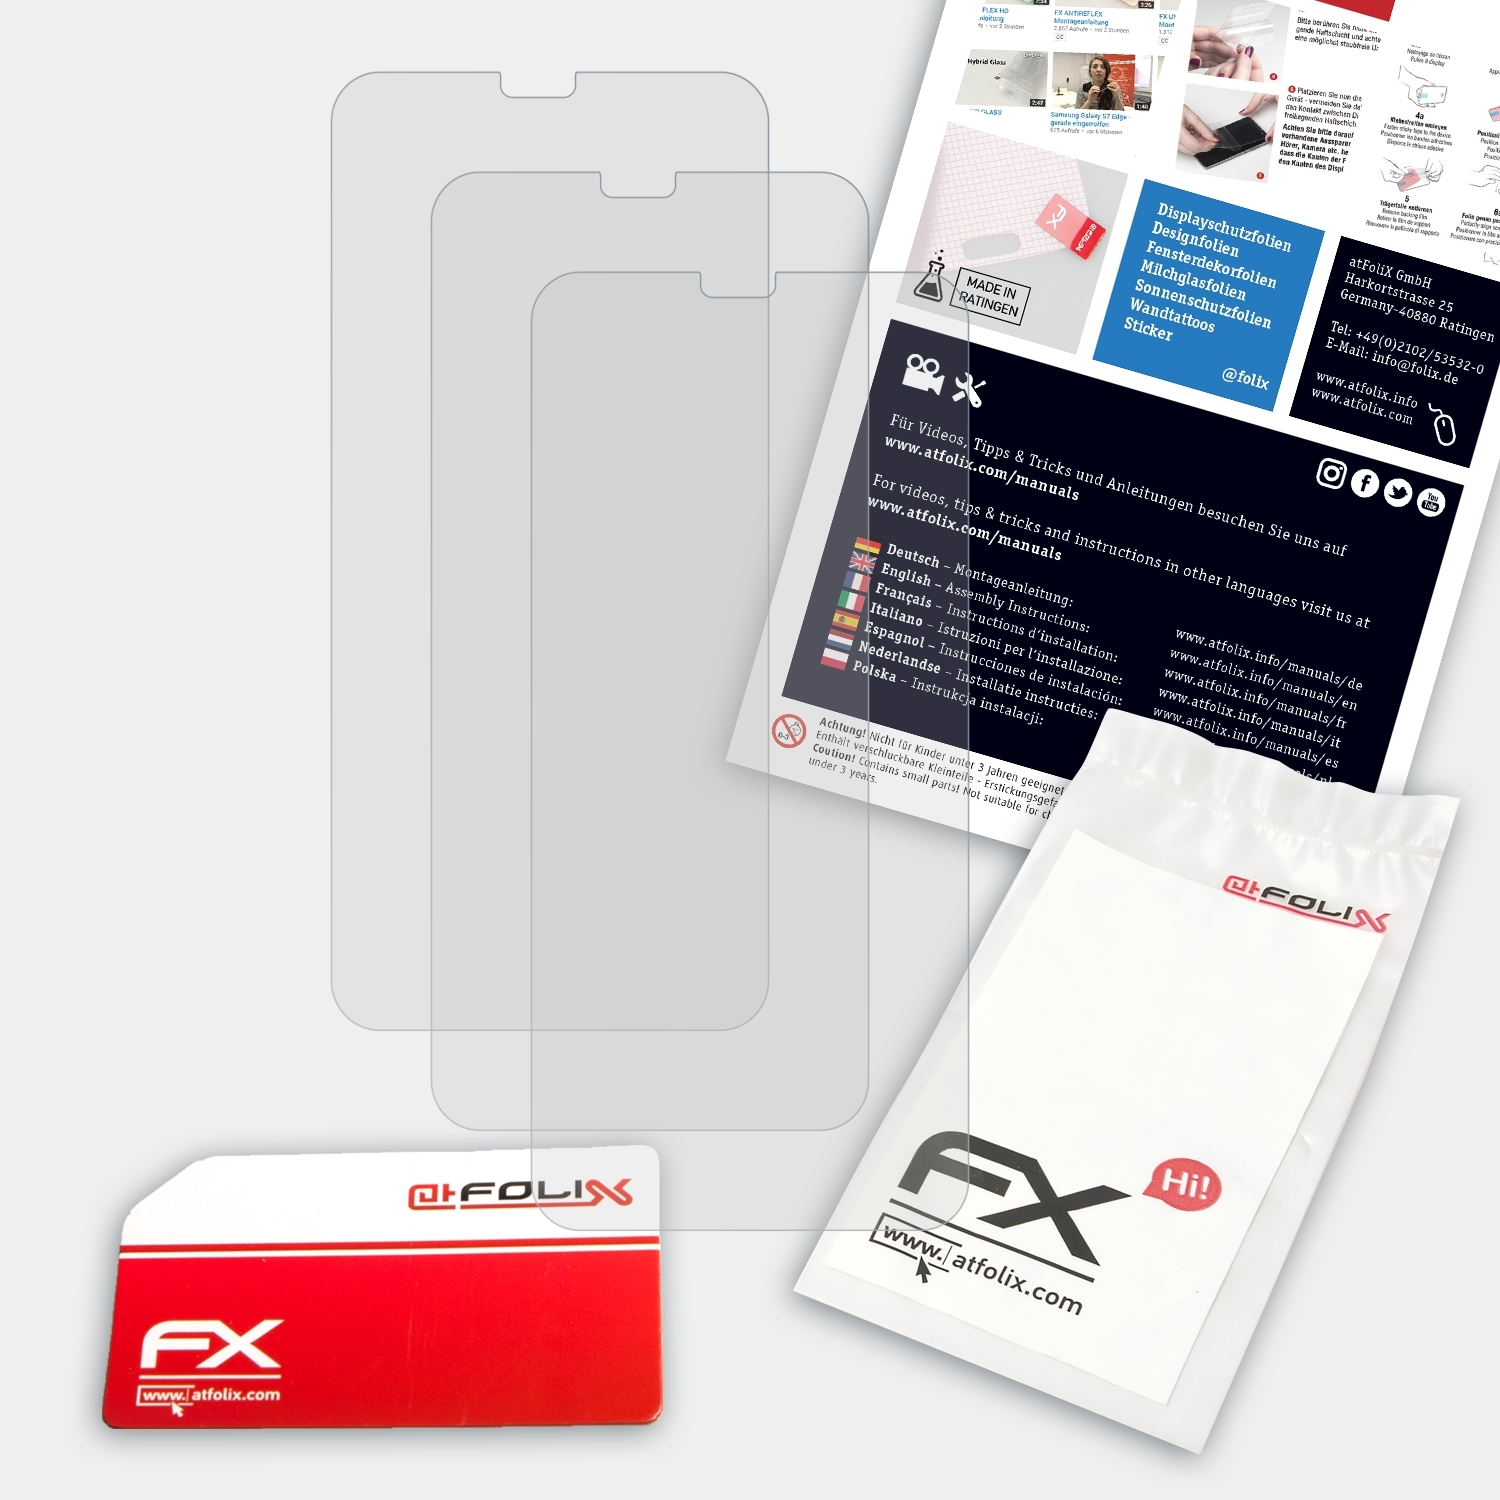 A3) Oppo 3x Displayschutz(für FX-Antireflex ATFOLIX